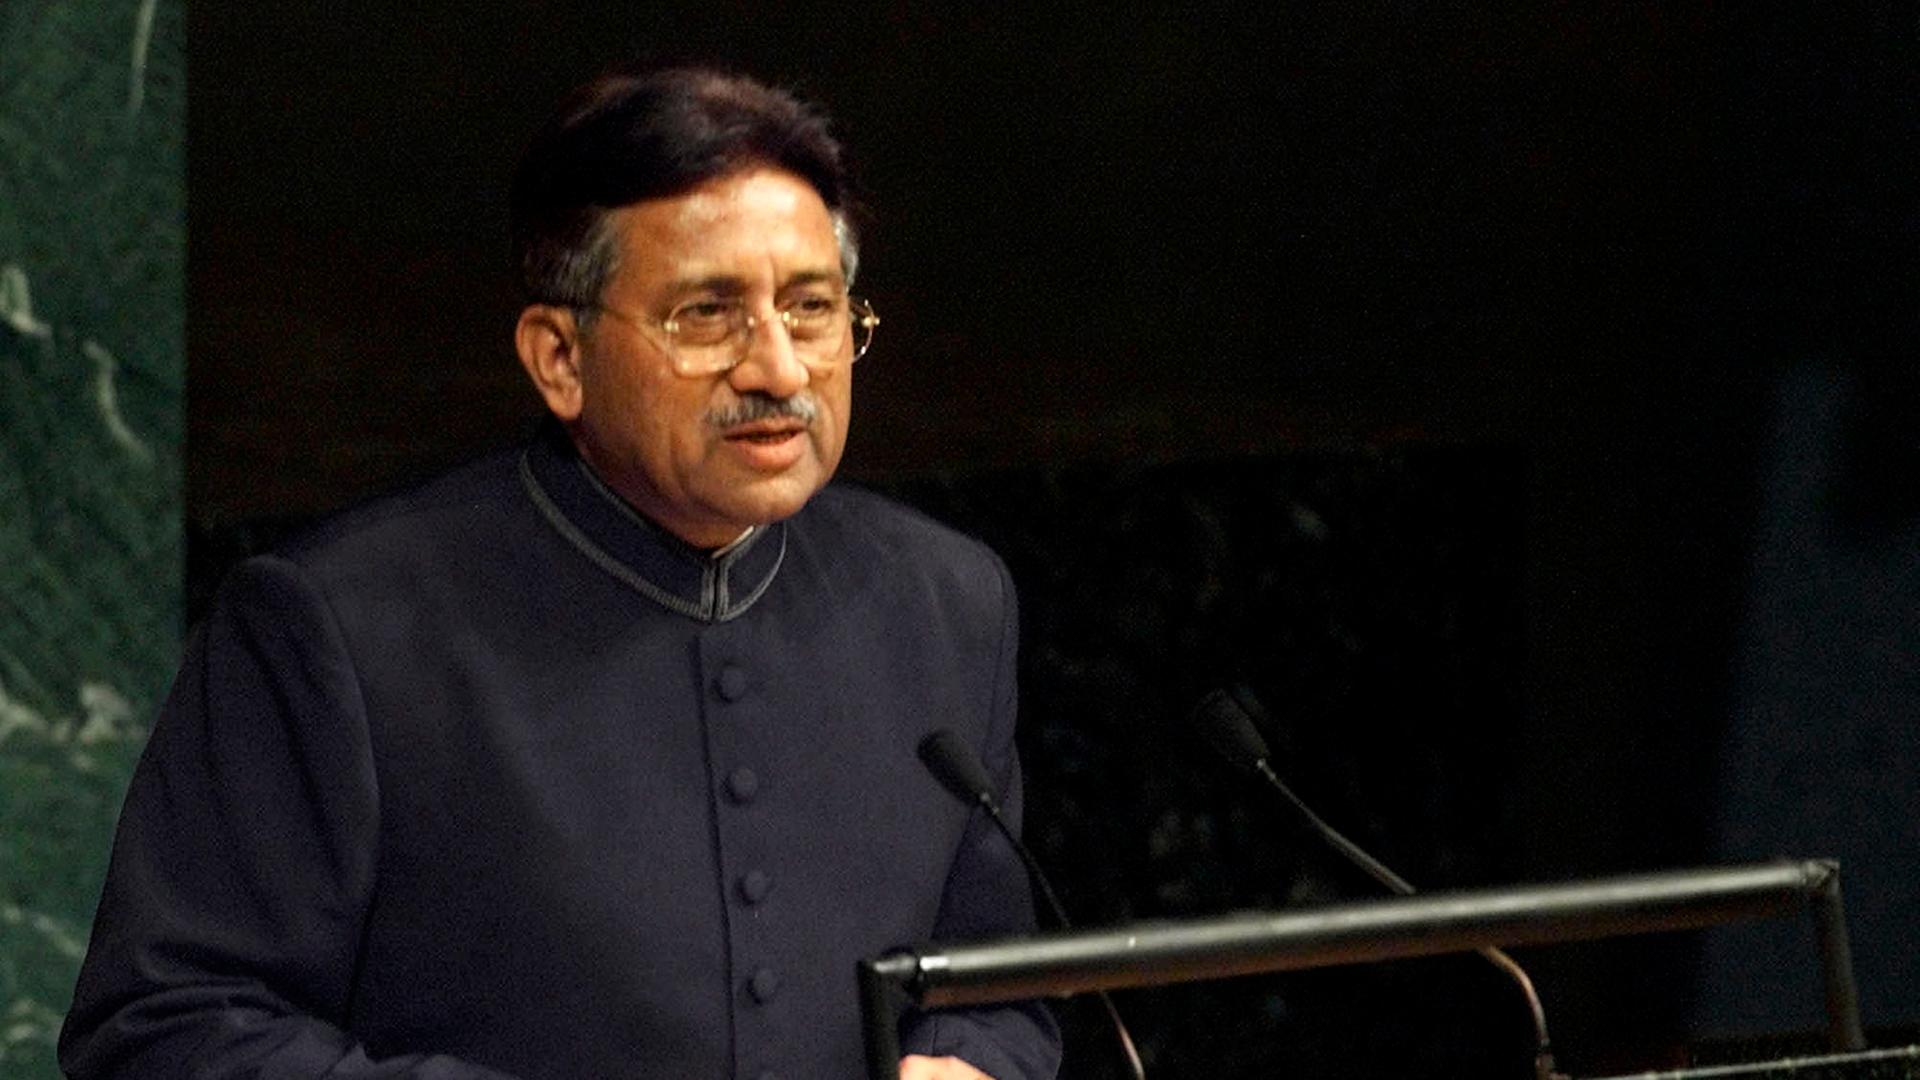 Pakistan - Früherer Präsident Musharraf stirbt im Alter von 79 Jahren